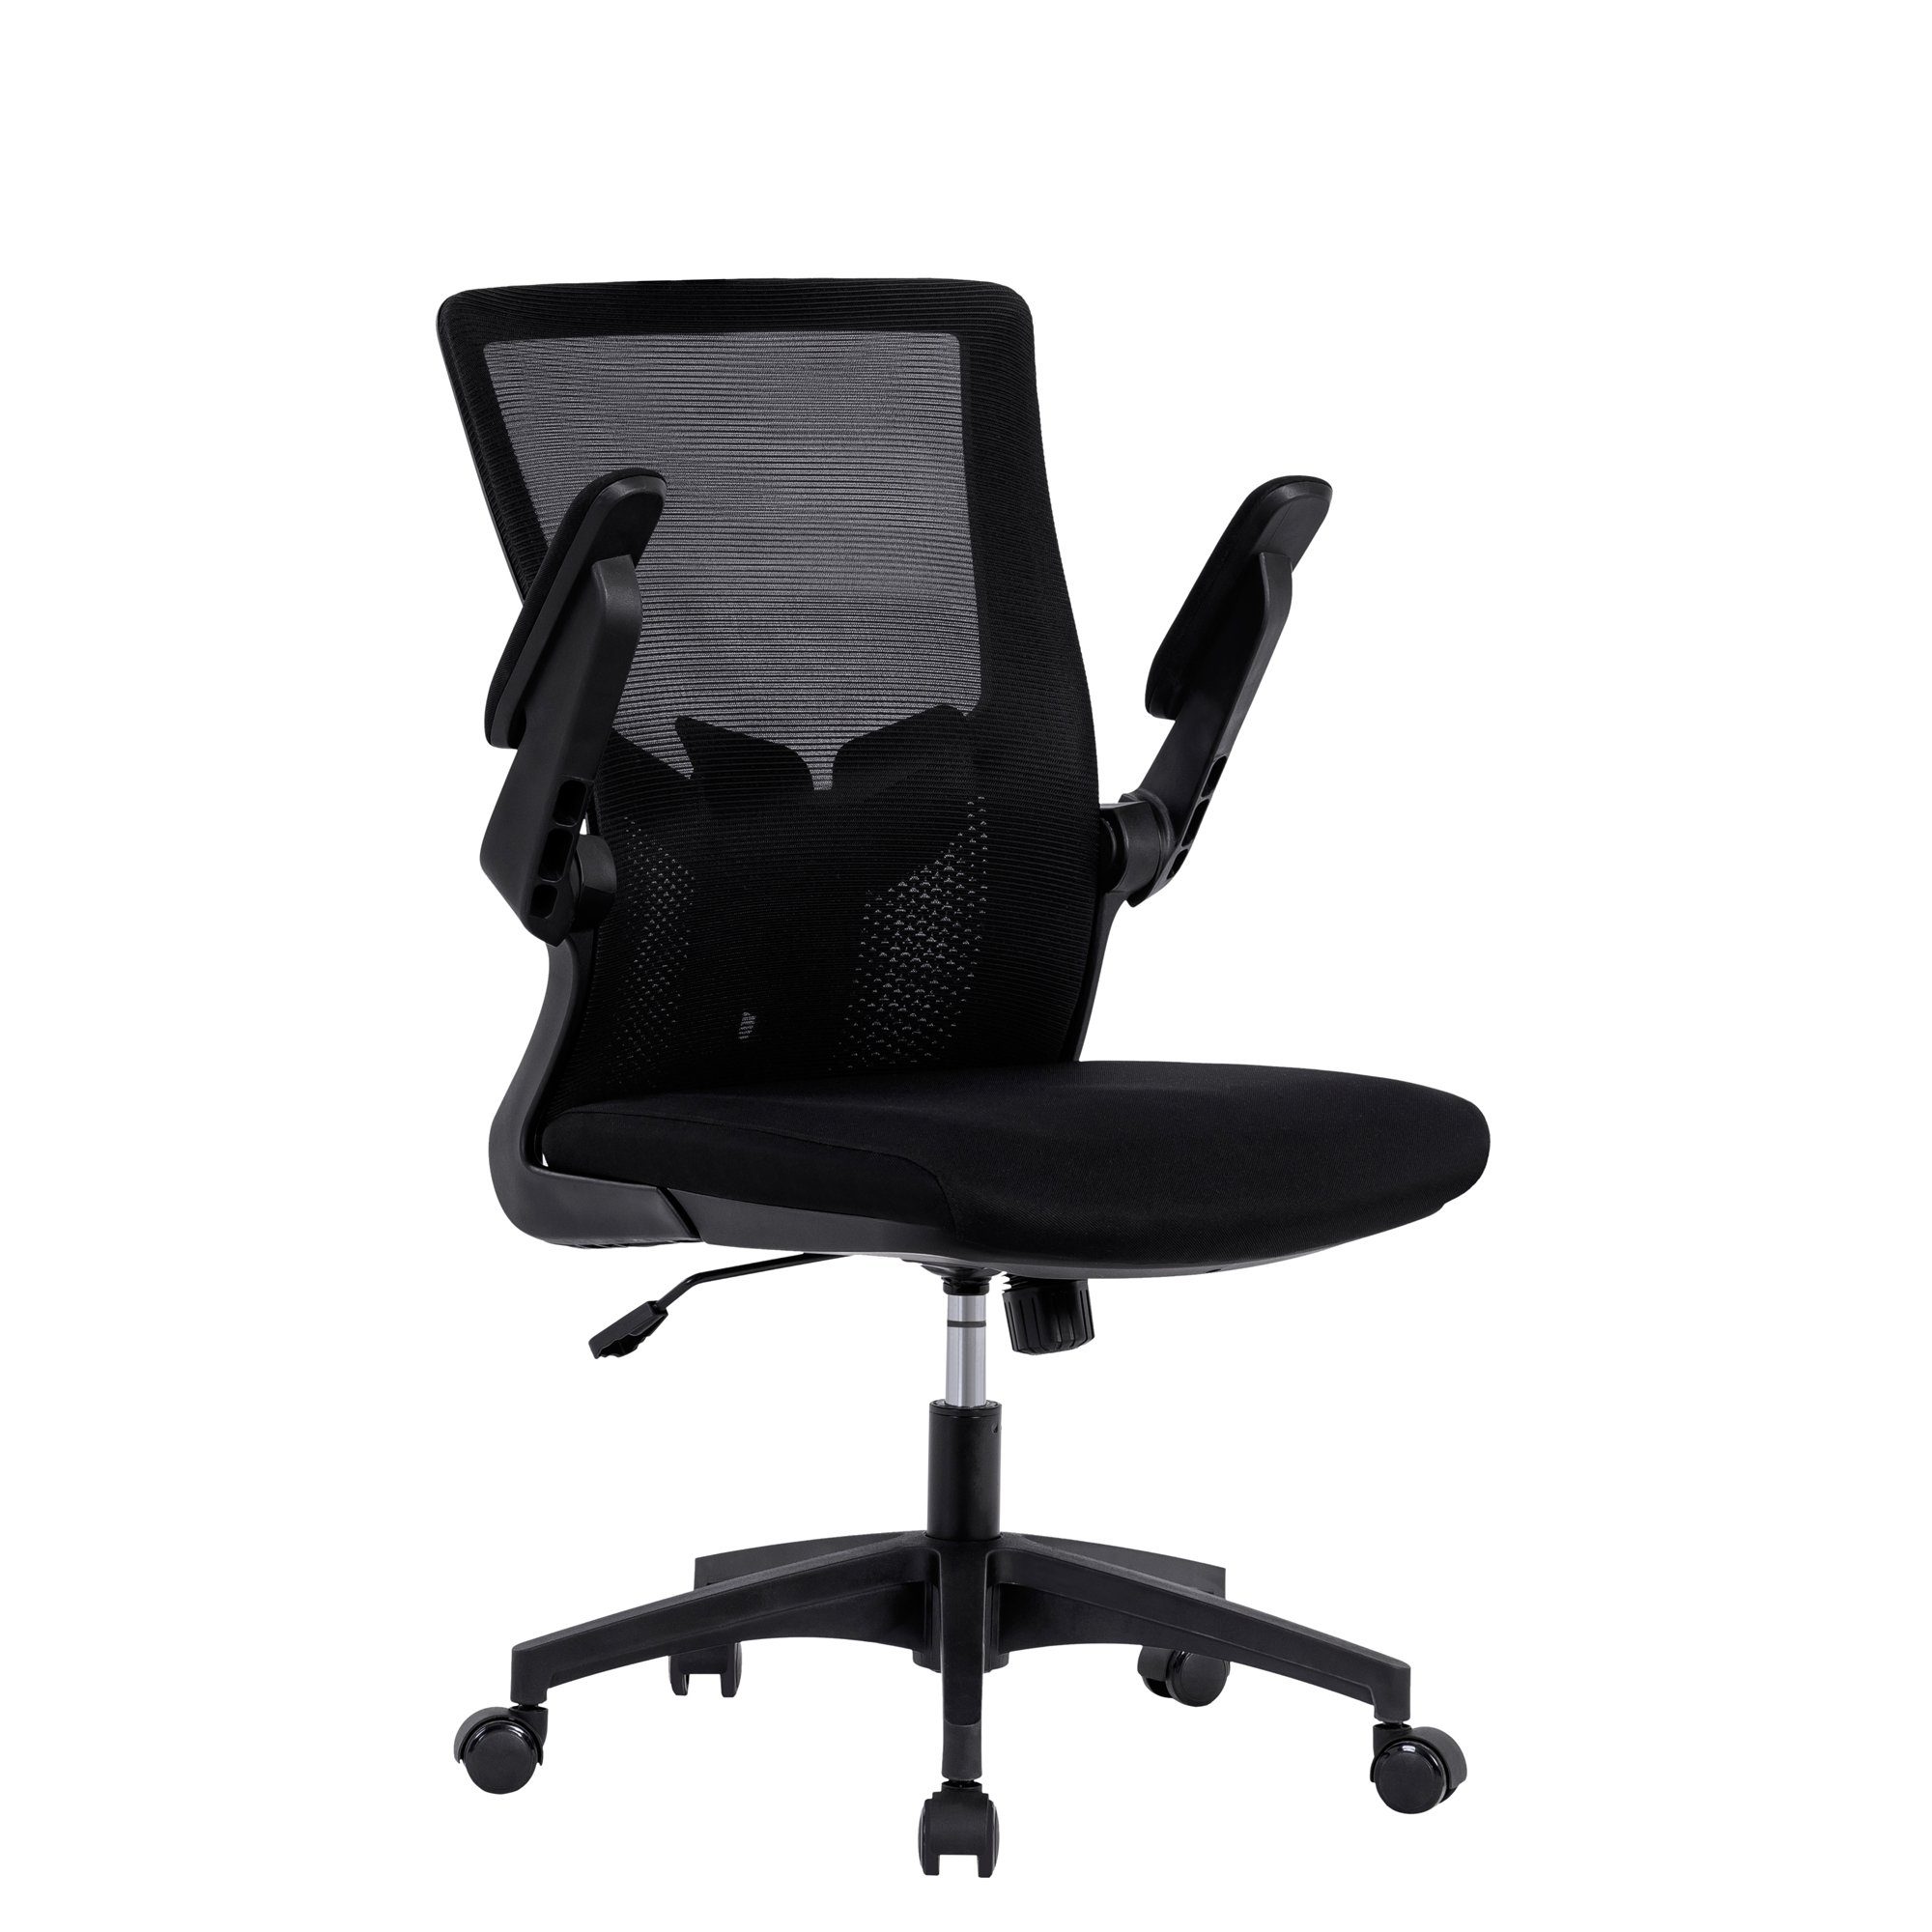 SOFTWEARY Drehstuhl ergonomischer Schreibtischstuhl mit Rückenlehne,  Bürostuhl, Chefsessel, Mesh Netz Stuhl, höhenverstellbar, mit einstellbar  Armlehne